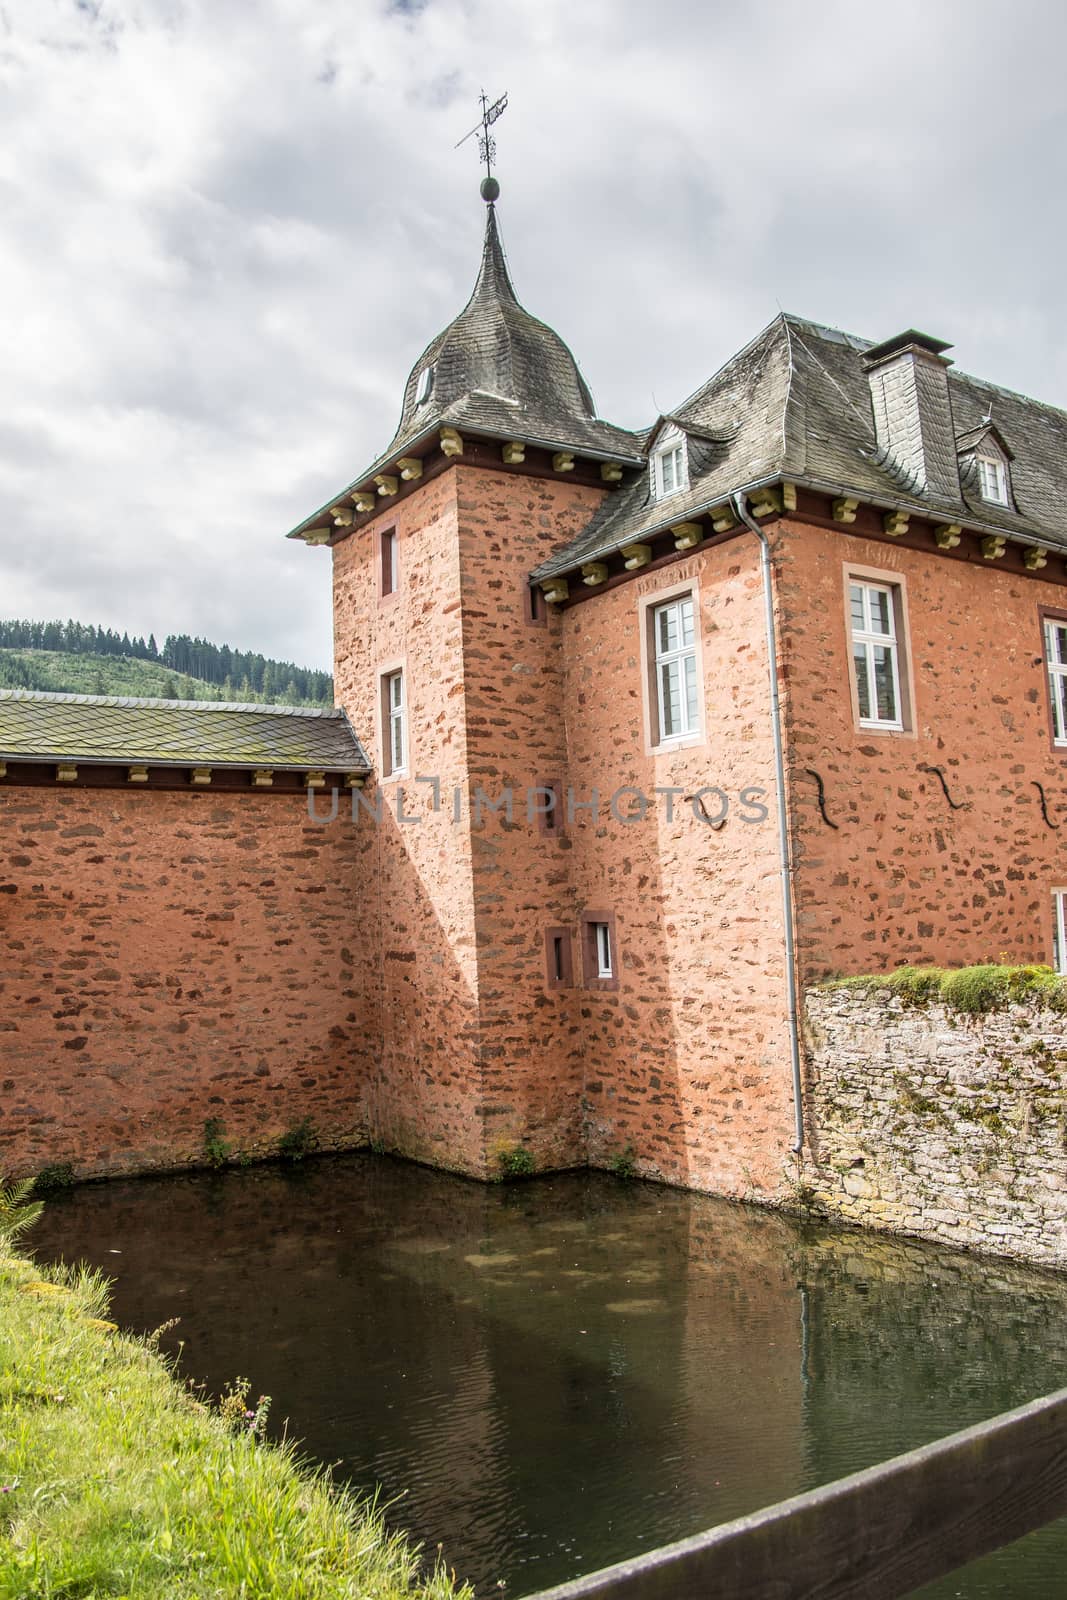 Adolfsburg Castle in the Sauerland